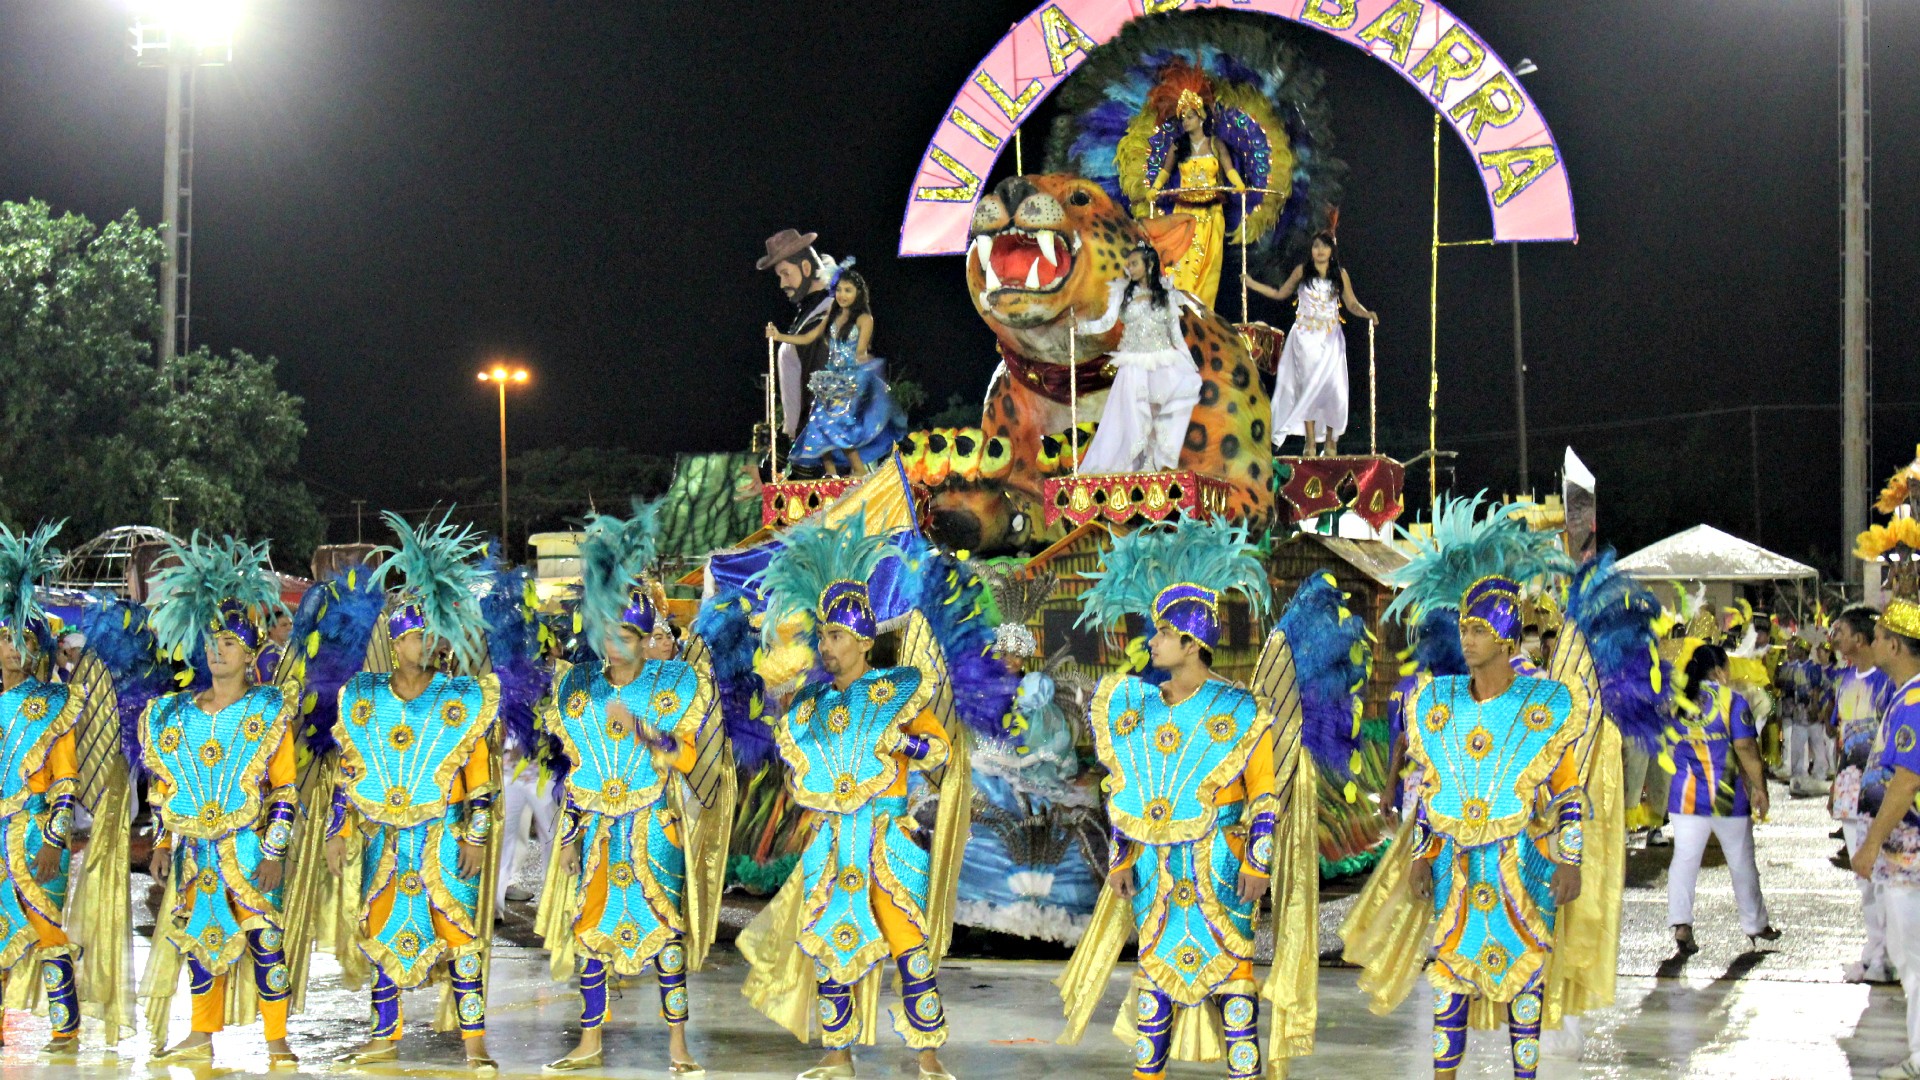 Coronavrus: So Paulo e Rio de Janeiro adiam desfiles de carnaval para abril